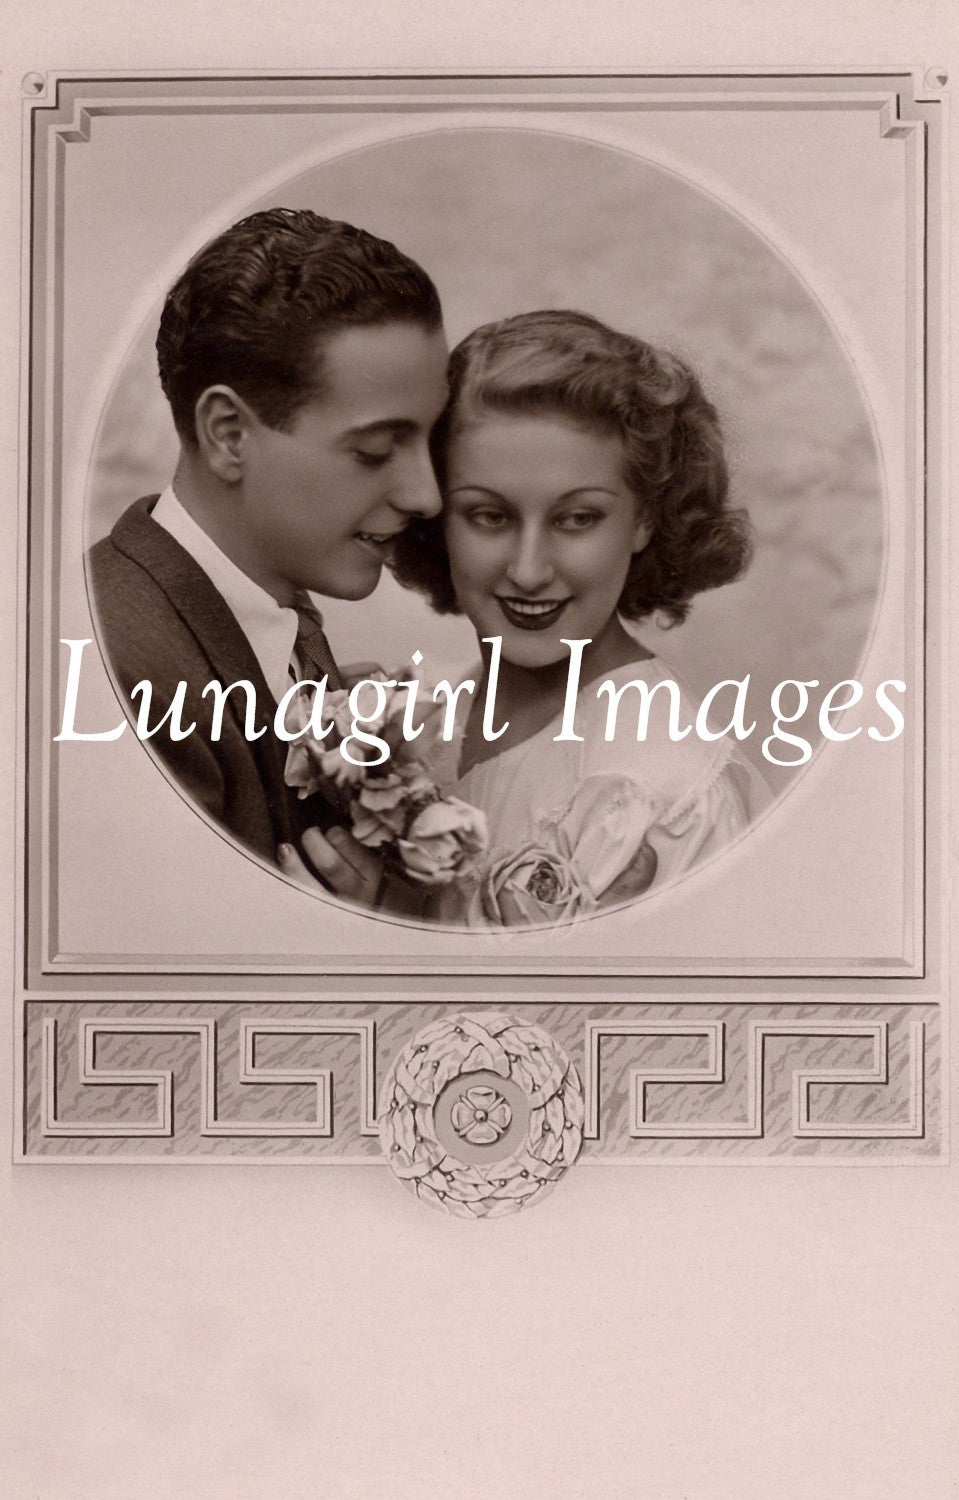 Photo Postcard Blank Labels: 100 Images - Lunagirl